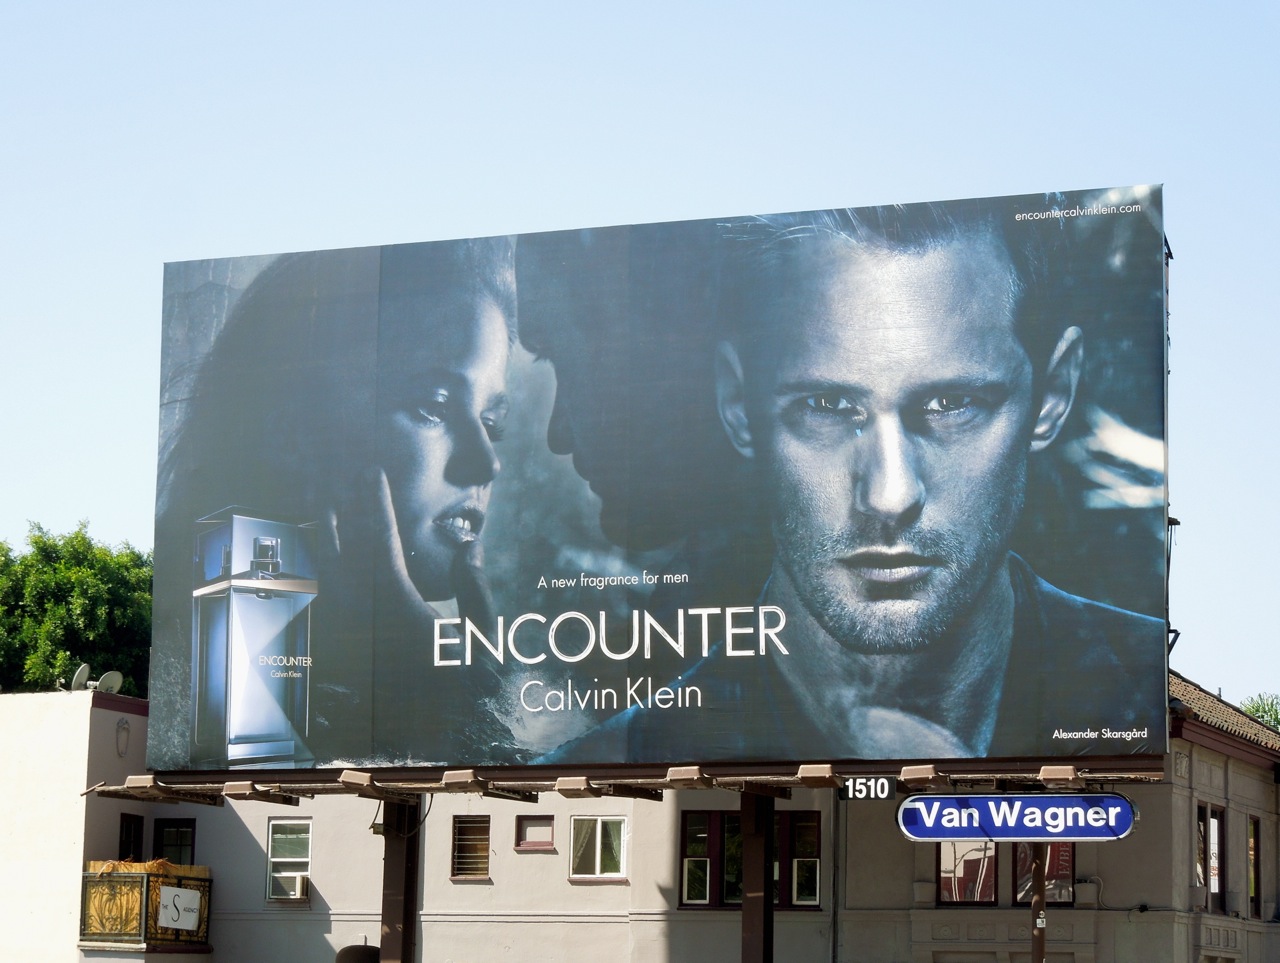 https://blogger.googleusercontent.com/img/b/R29vZ2xl/AVvXsEhKIaJ0ZjEFg0Sb7jK8tbbwv1sQbjNacDmrHl7MGM92Rv64osZRwAKTnf1H2AlXkEOUxGfxyC50VwBGAeasow49xoSPDlwNeCtAu6DbuiFrQ4GbFoN7uJu7cAHcH3RsWHZr4FfoswPUPDoQ/s1600/skarsgard+ck+encounter+billboard.jpg